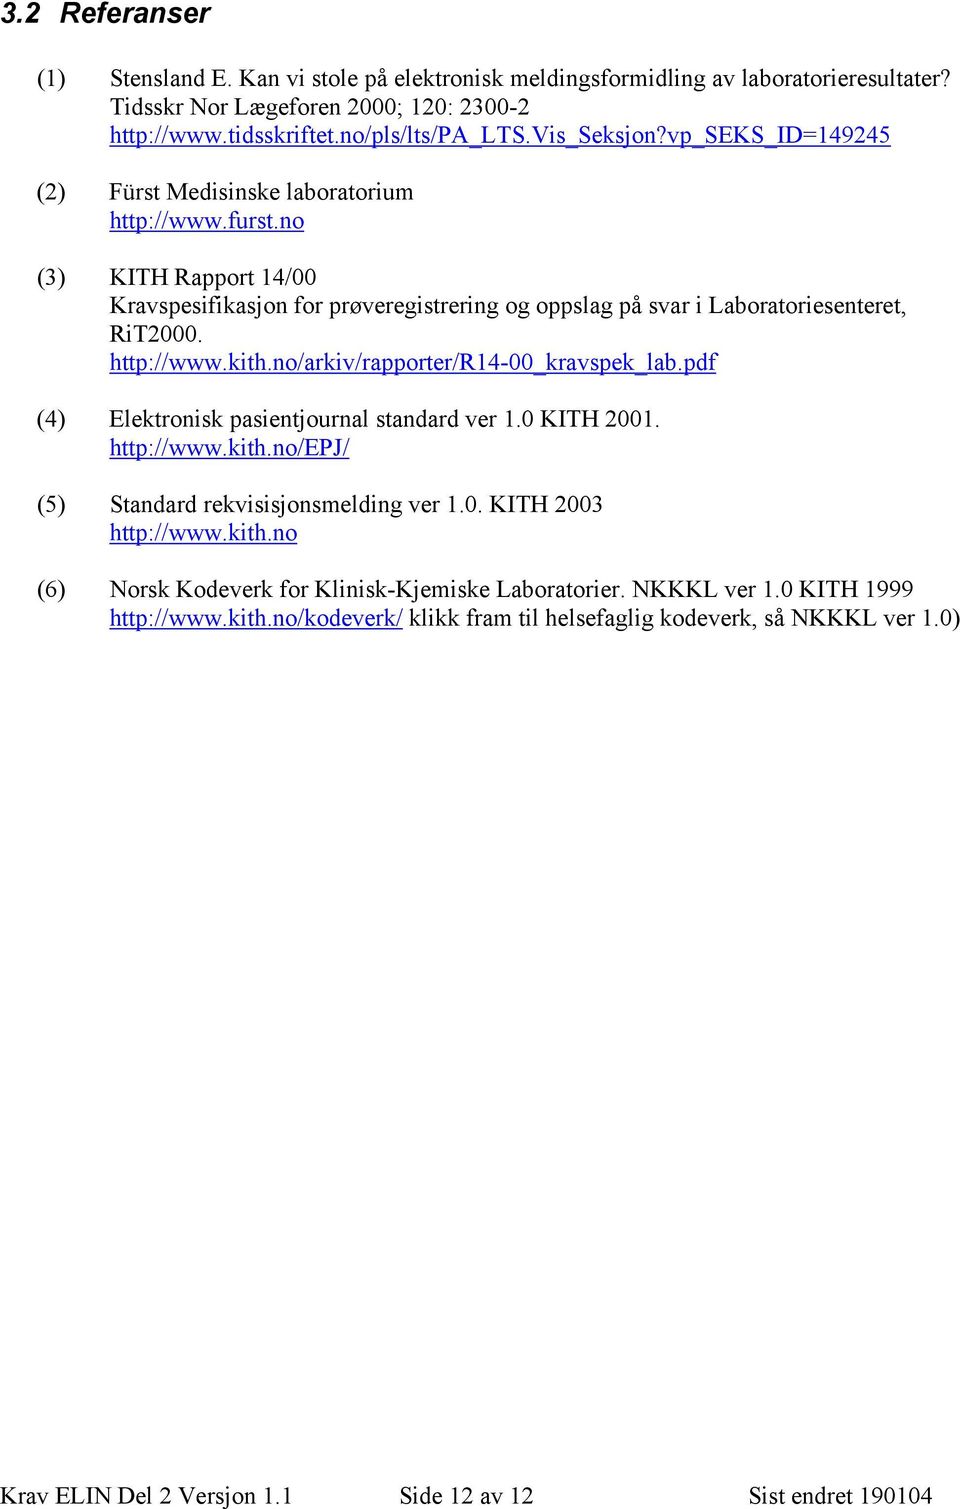 no/arkiv/rapporter/r14-00_kravspek_lab.pdf (4) Elektronisk pasientjournal standard ver 1.0 KITH 2001. http://www.kith.no/epj/ (5) Standard rekvisisjonsmelding ver 1.0. KITH 2003 http://www.kith.no (6) Norsk Kodeverk for Klinisk-Kjemiske Laboratorier.